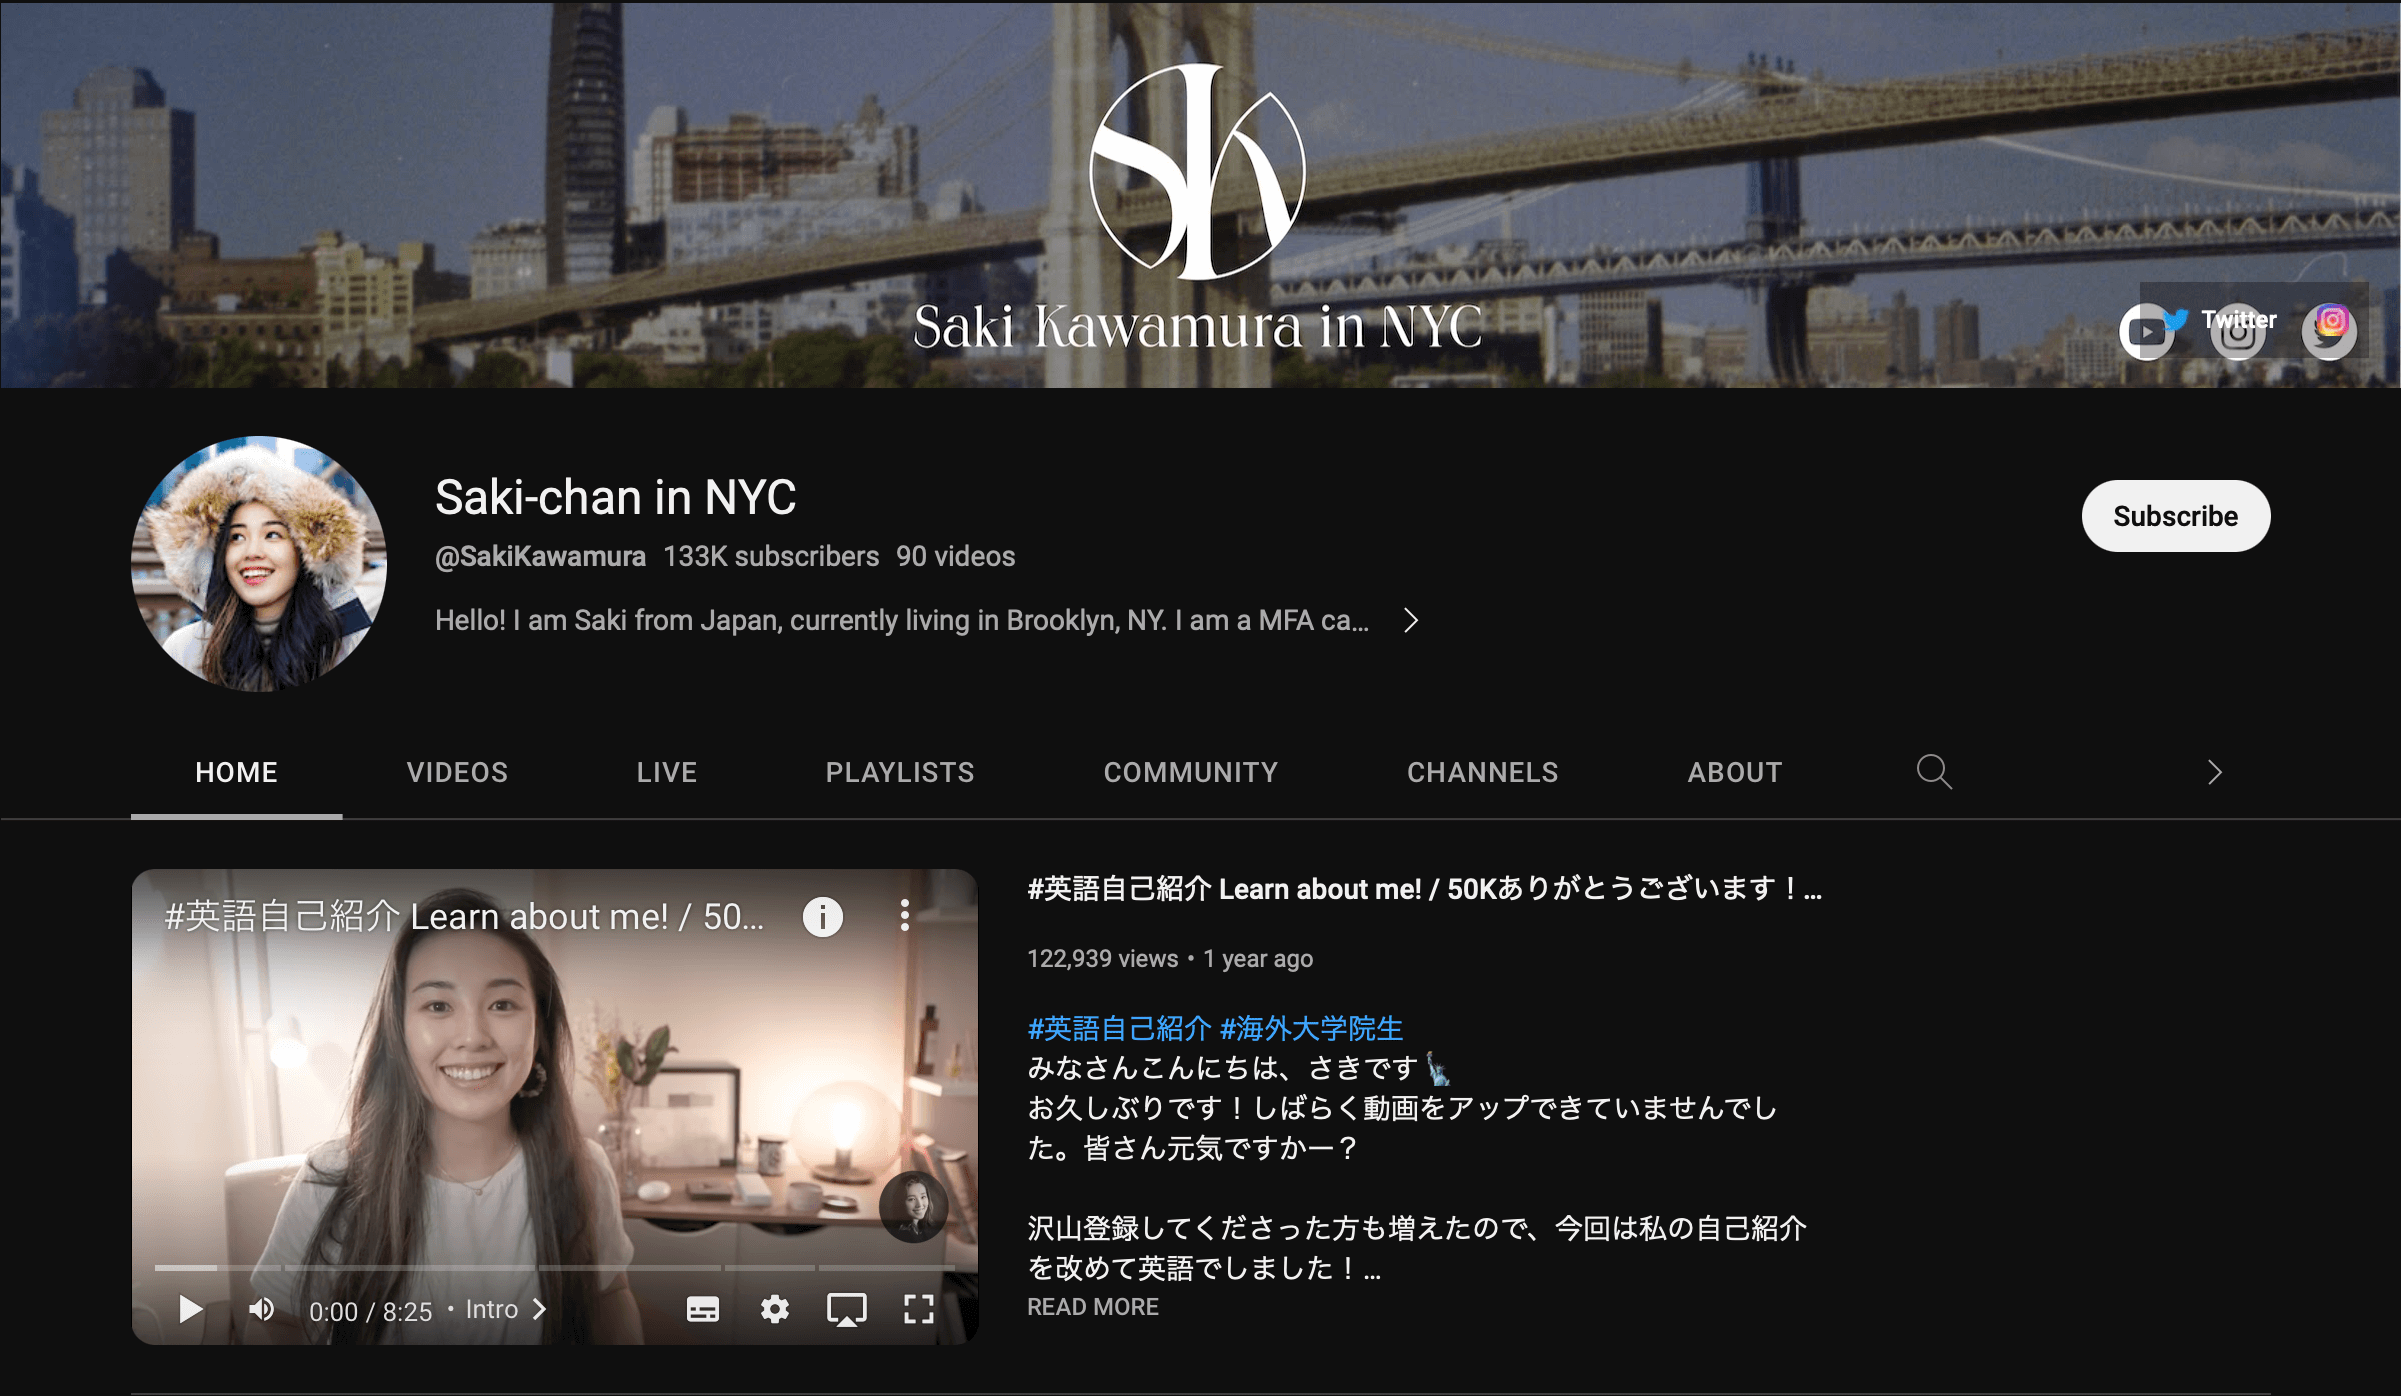 Saki-chan in NYC